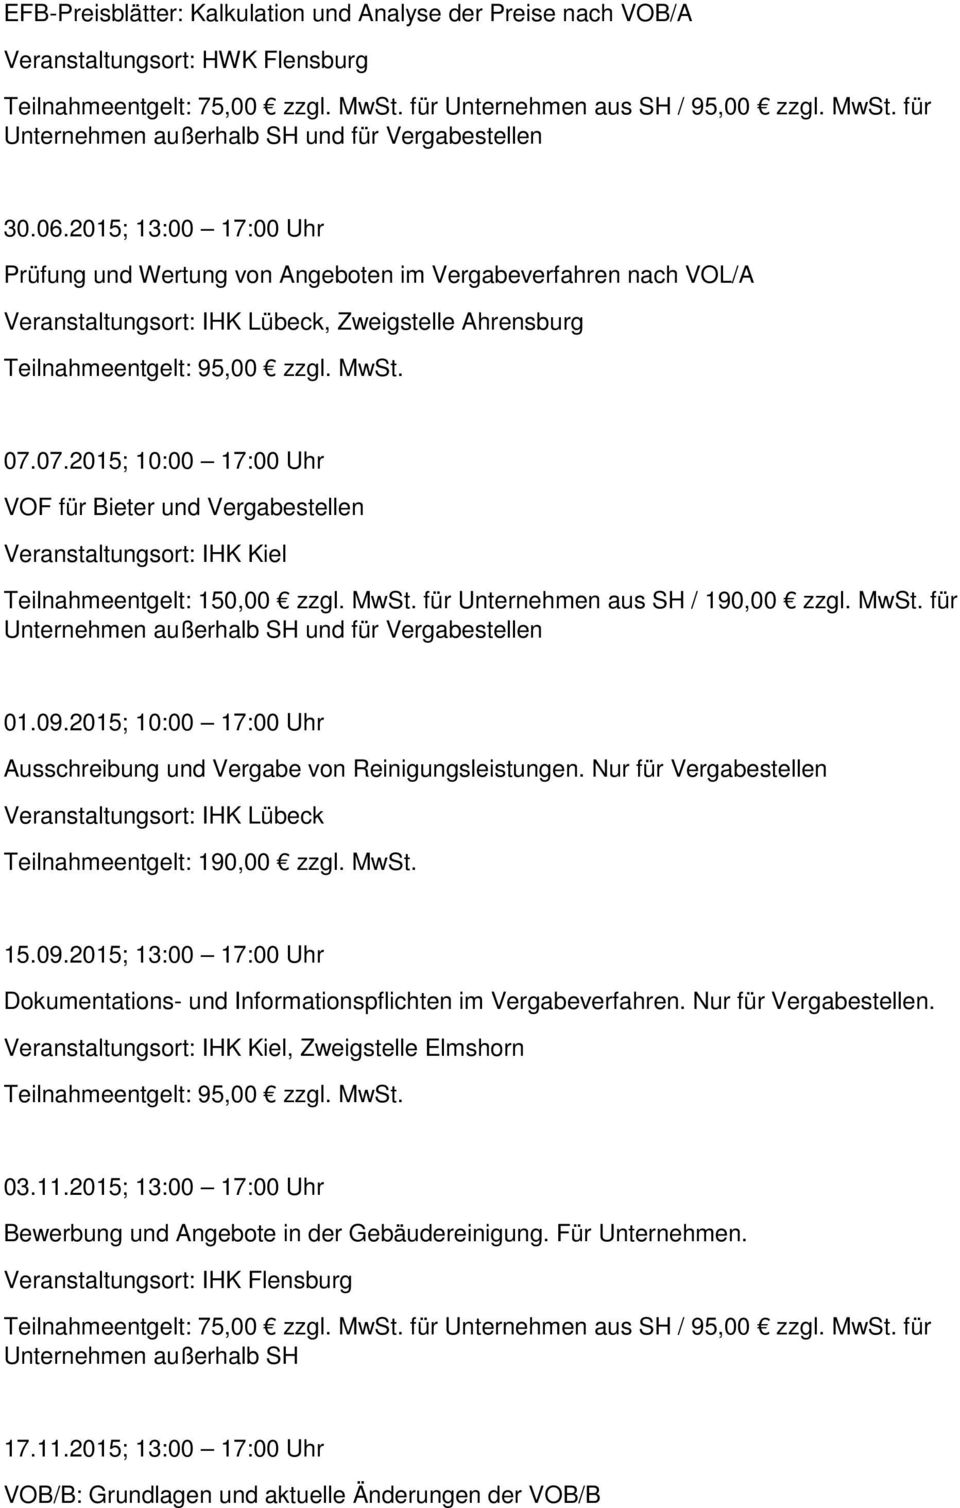 07.2015; 10:00 17:00 Uhr VOF für Bieter und Vergabestellen IHK Kiel 150,00 zzgl. MwSt. für Unternehmen aus SH / 190,00 zzgl. MwSt. für 01.09.